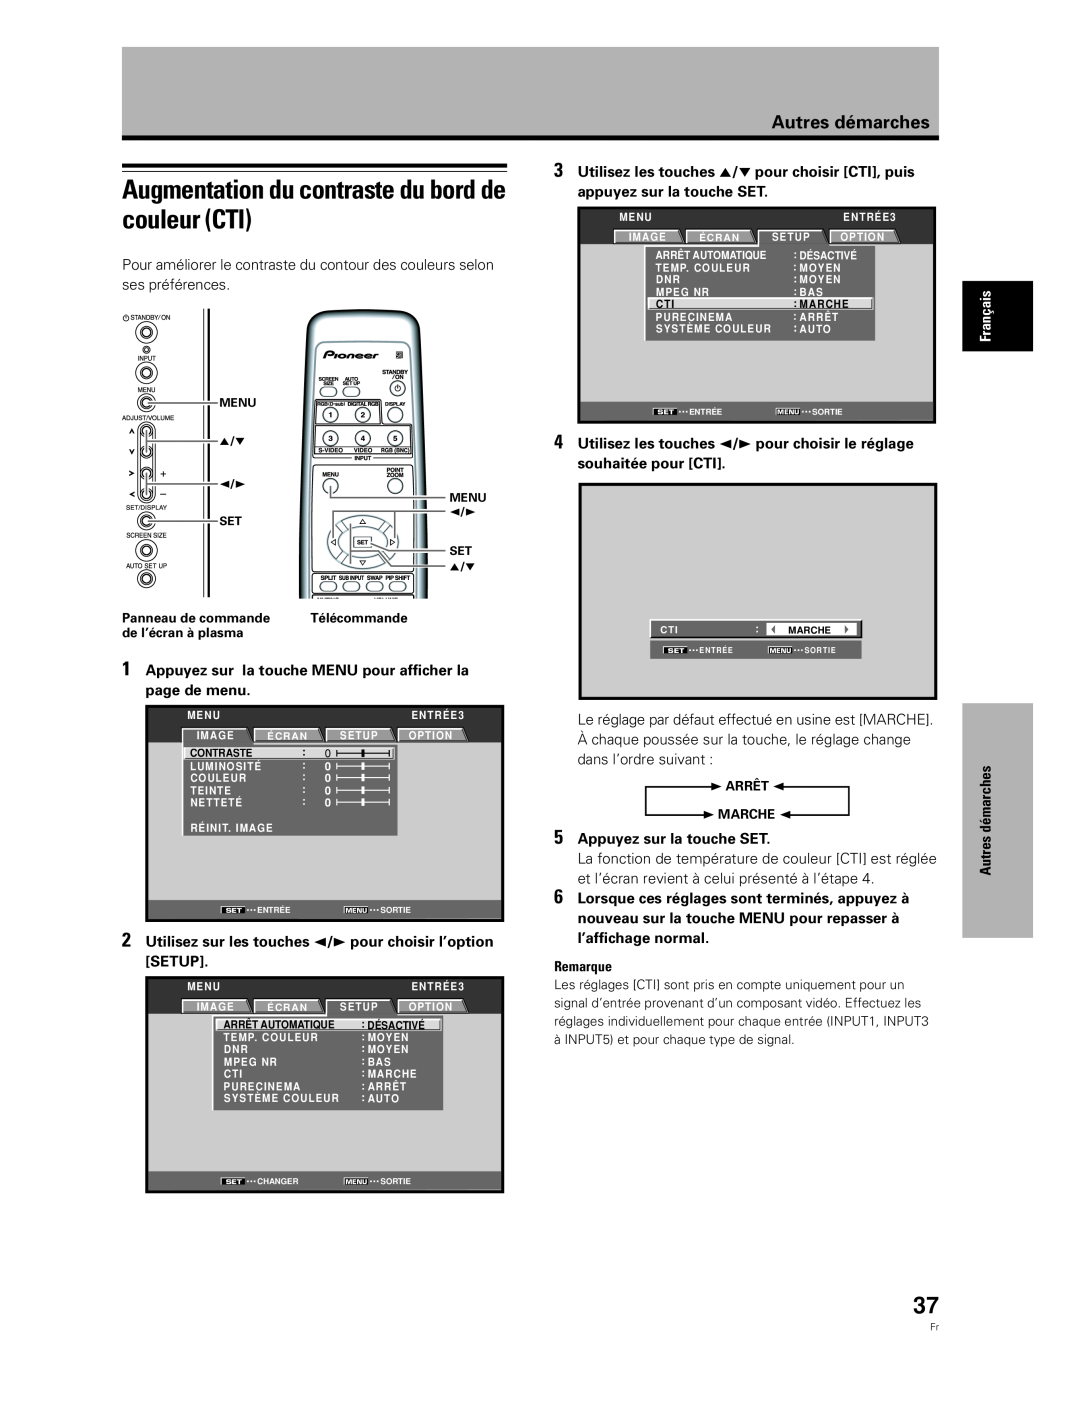 Pioneer PDA-5003 Augmentation du contraste du bord de couleur CTI, Appuyez sur la touche SET, Autres démarches, Remarque 